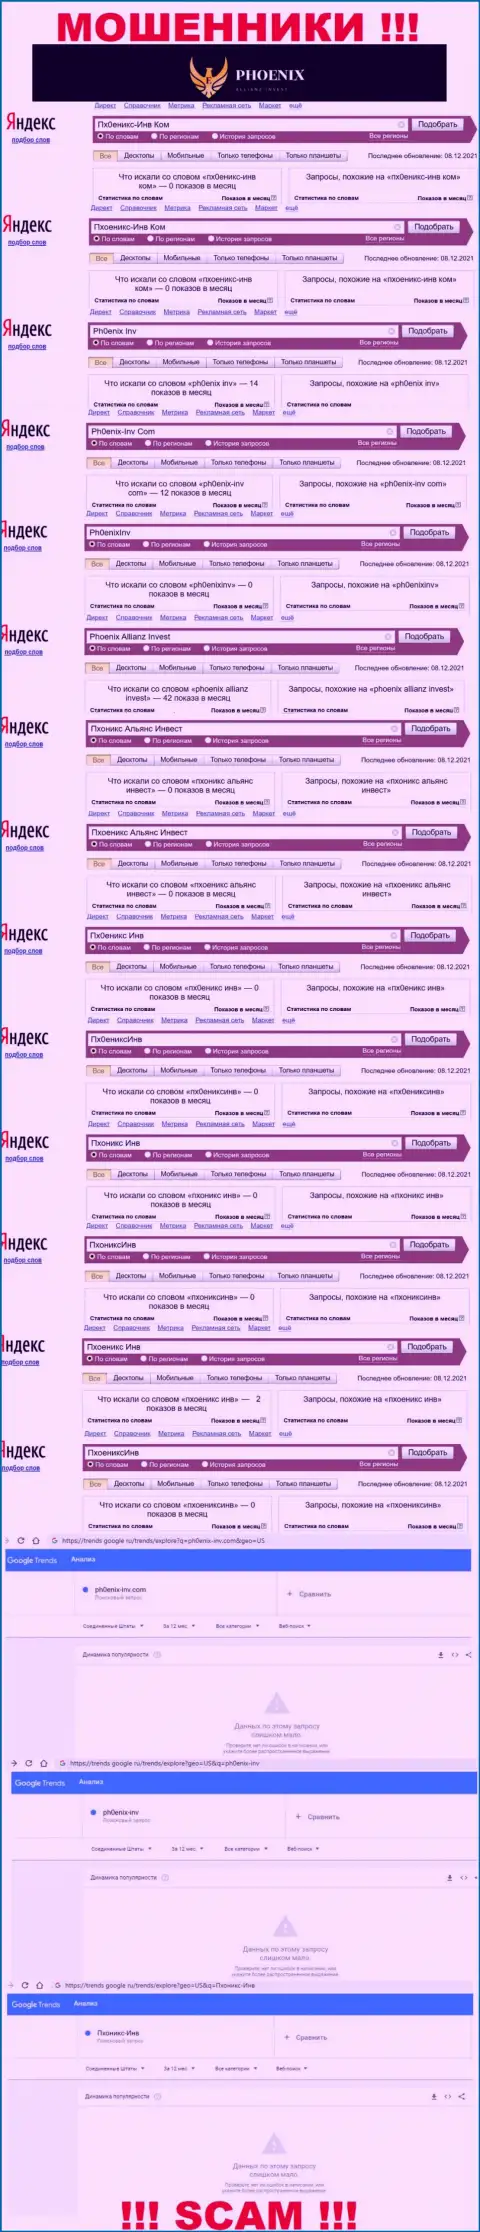 Скриншот результатов поисковых запросов по противозаконно действующей компании Пхоеникс Инв